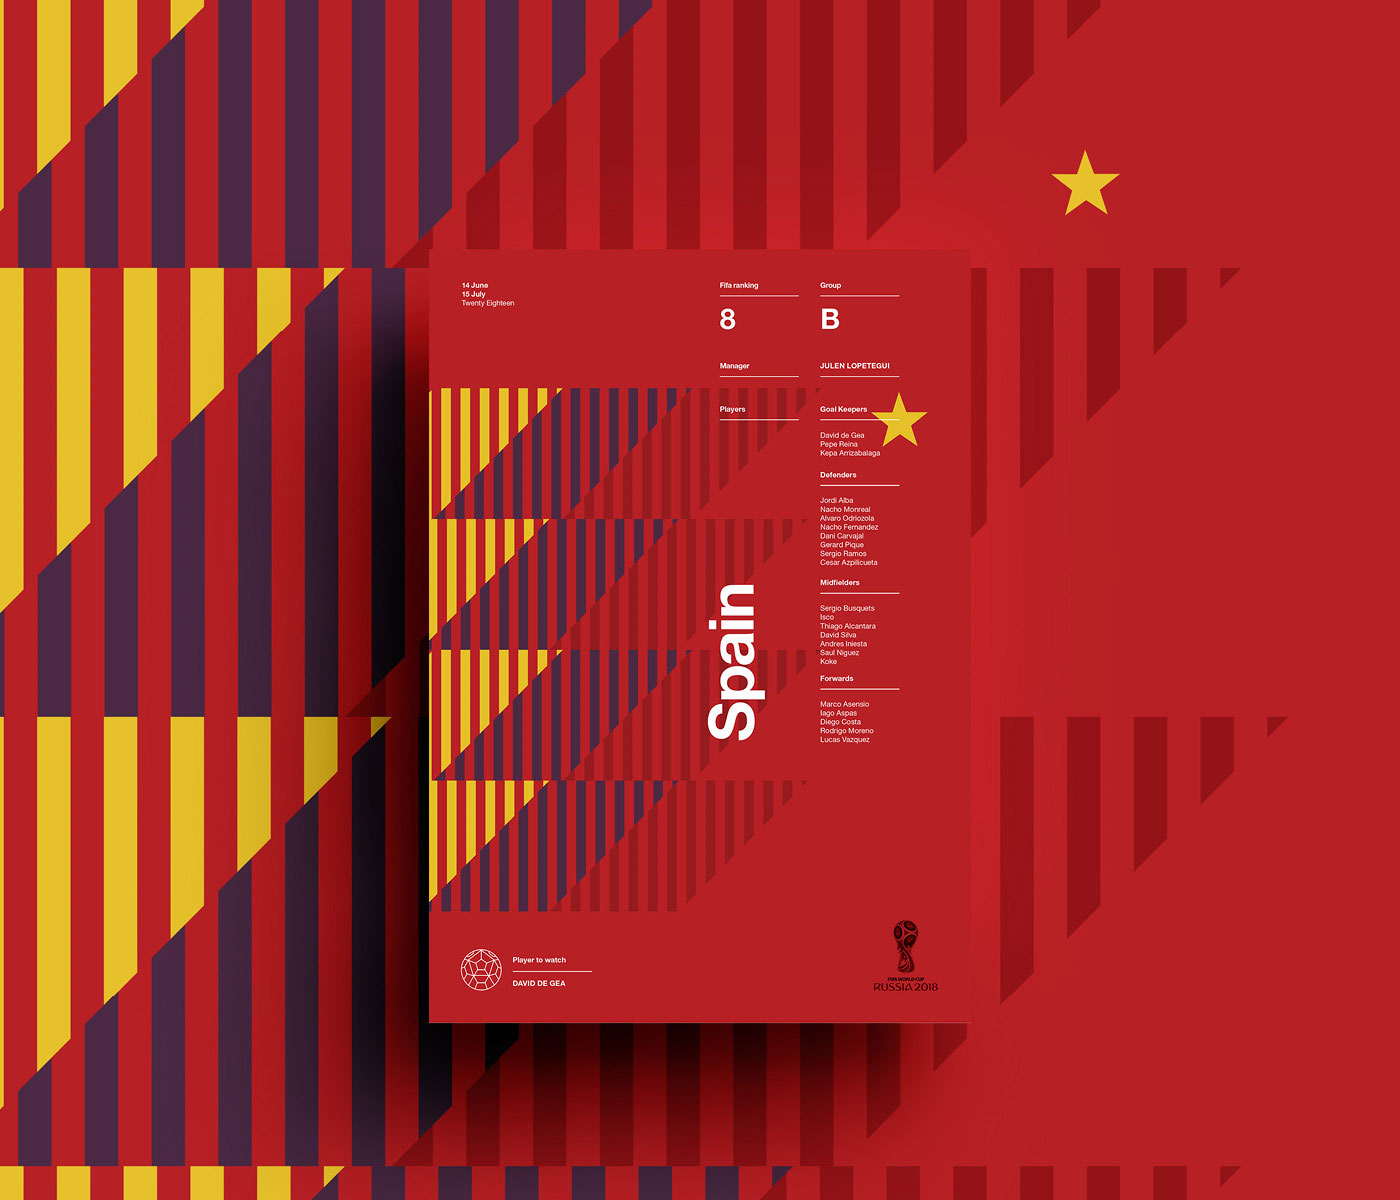 2018年俄罗斯世界杯参赛国家队海报设计